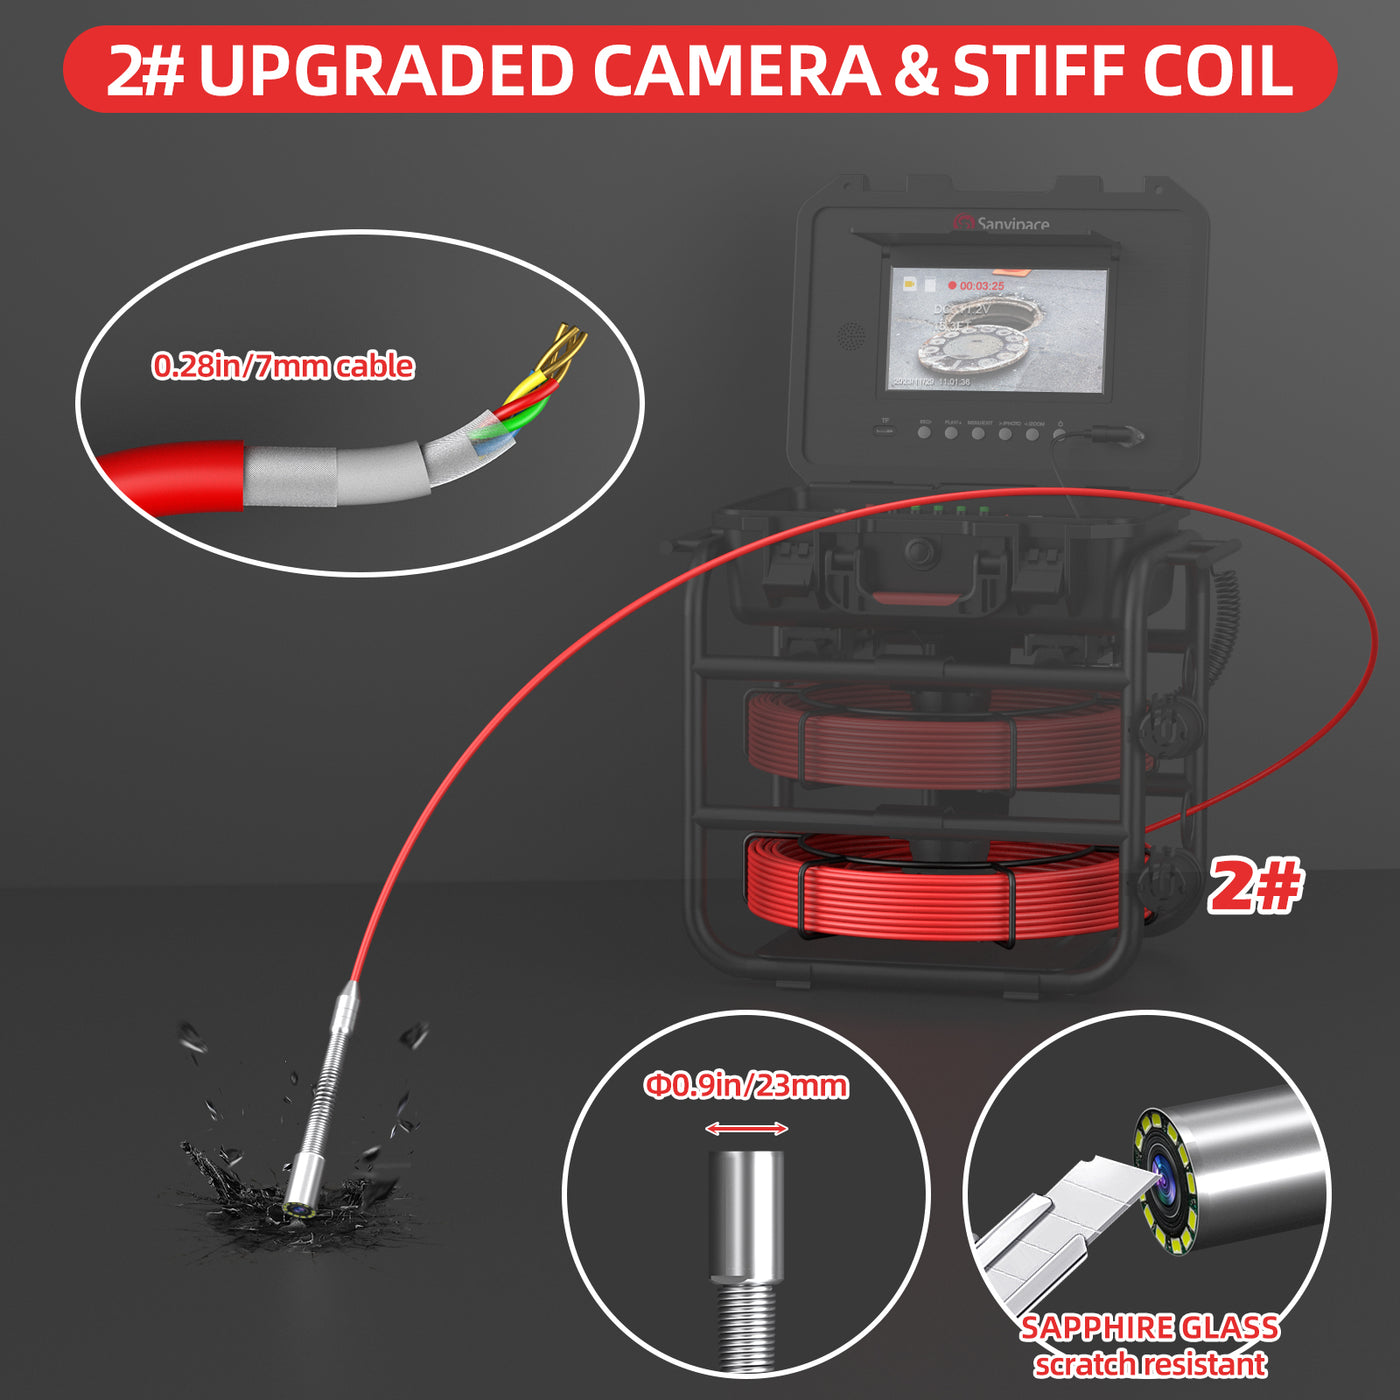 Upgraded Camera & Stiff Coil